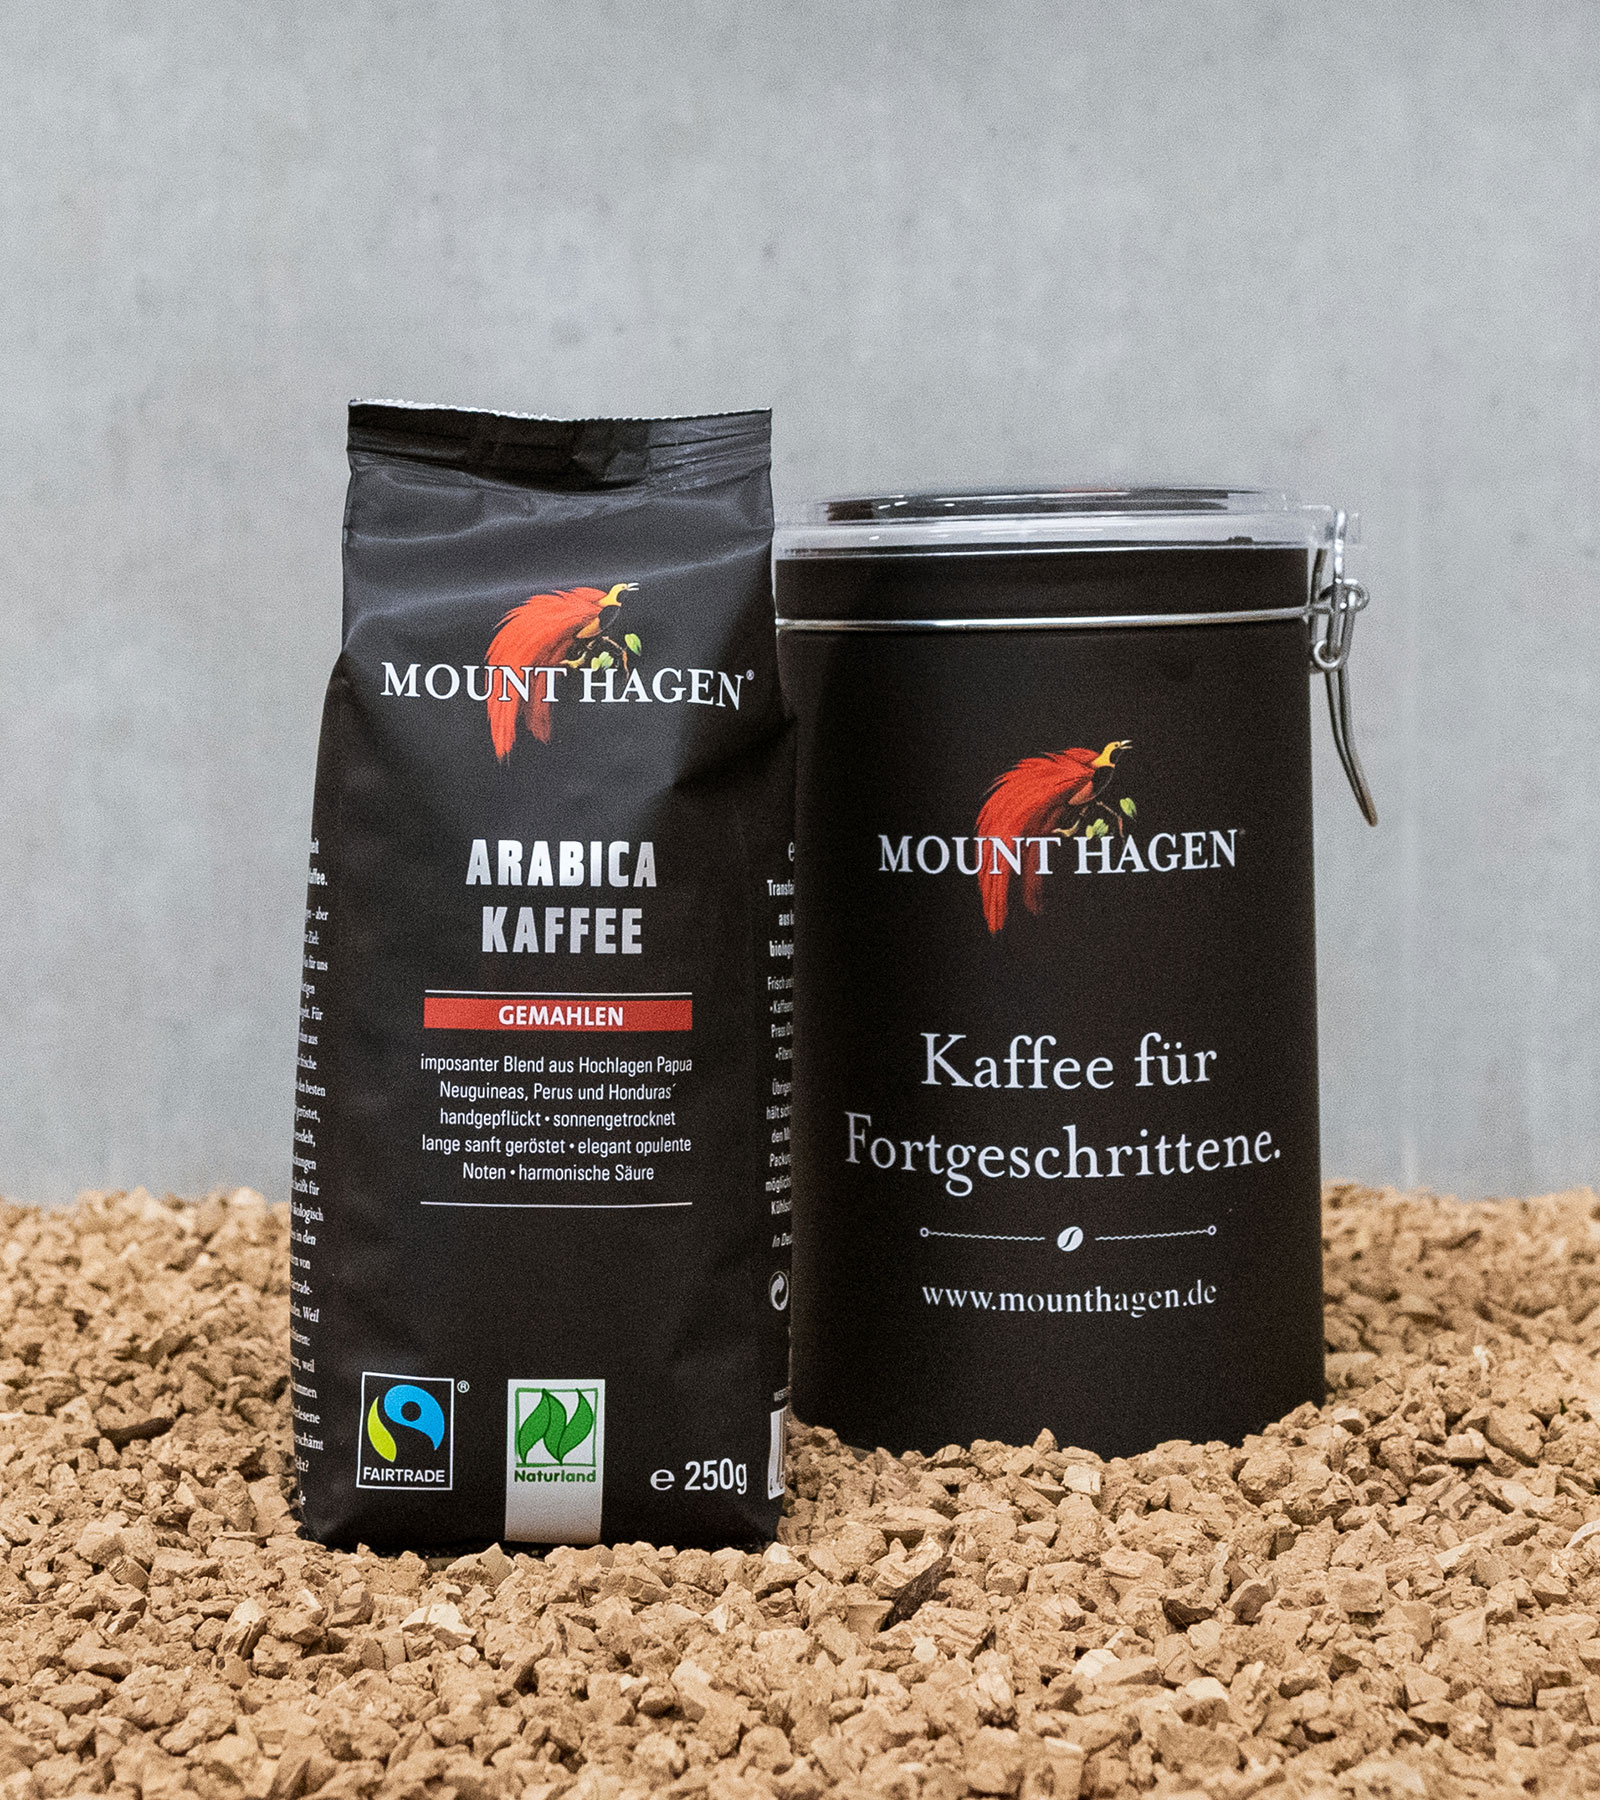 Mounthagen Arabica Kaffee gemahlen